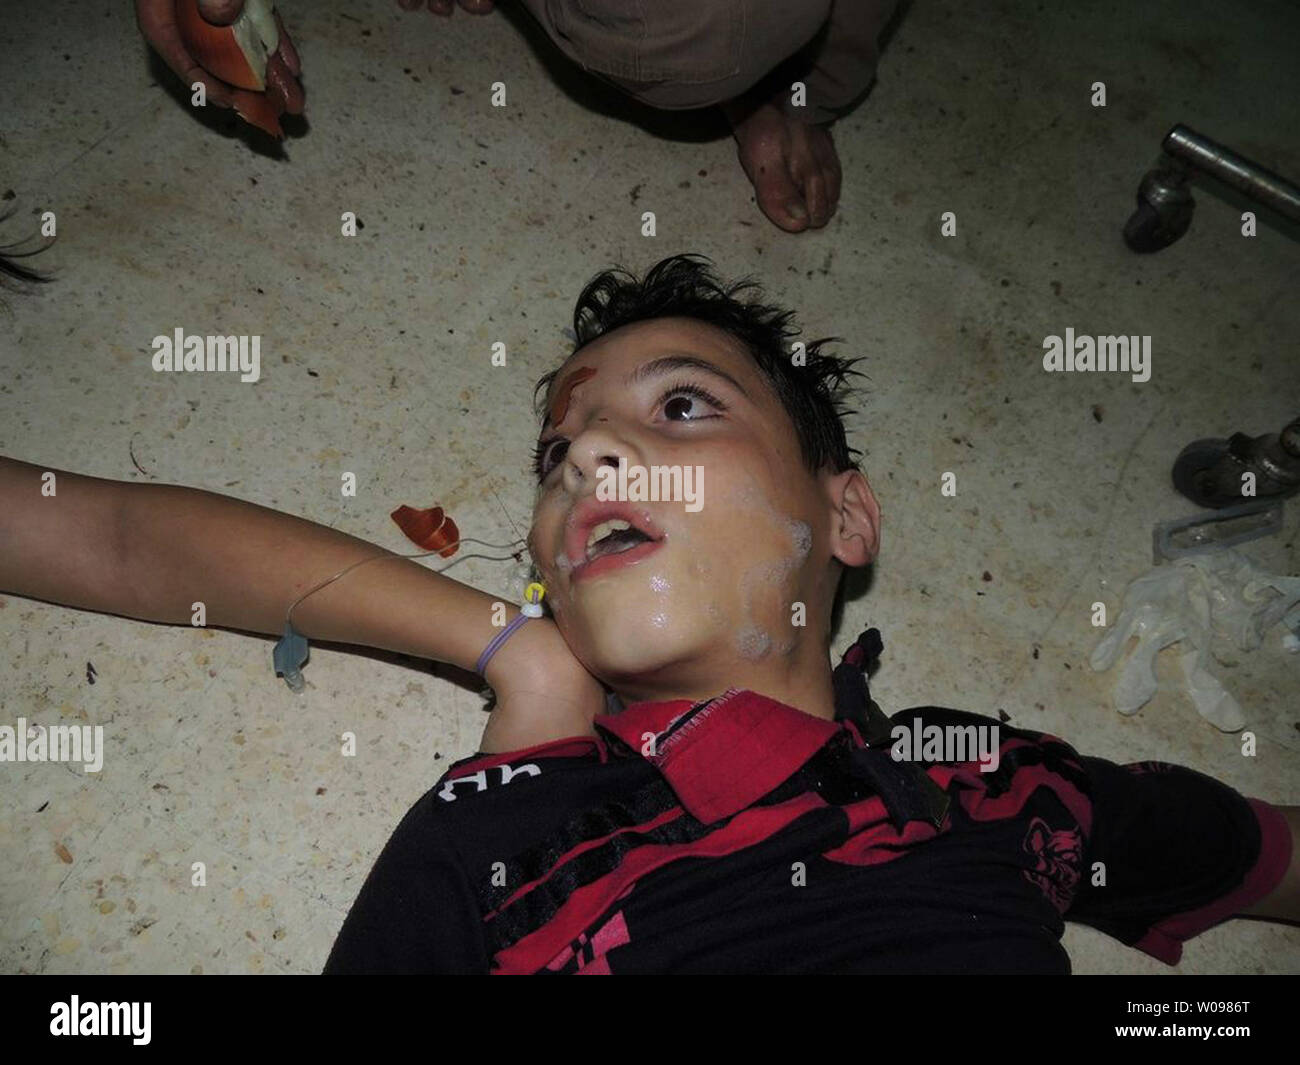 Bambino morto muore la formazione di schiuma dalla bocca dopo un sospetto  attacco chimico nel Ghouta sobborgo di Damasco in Siria il 21 agosto 2013.  Siriano rivendicazione ribelli sono stati uccisi in